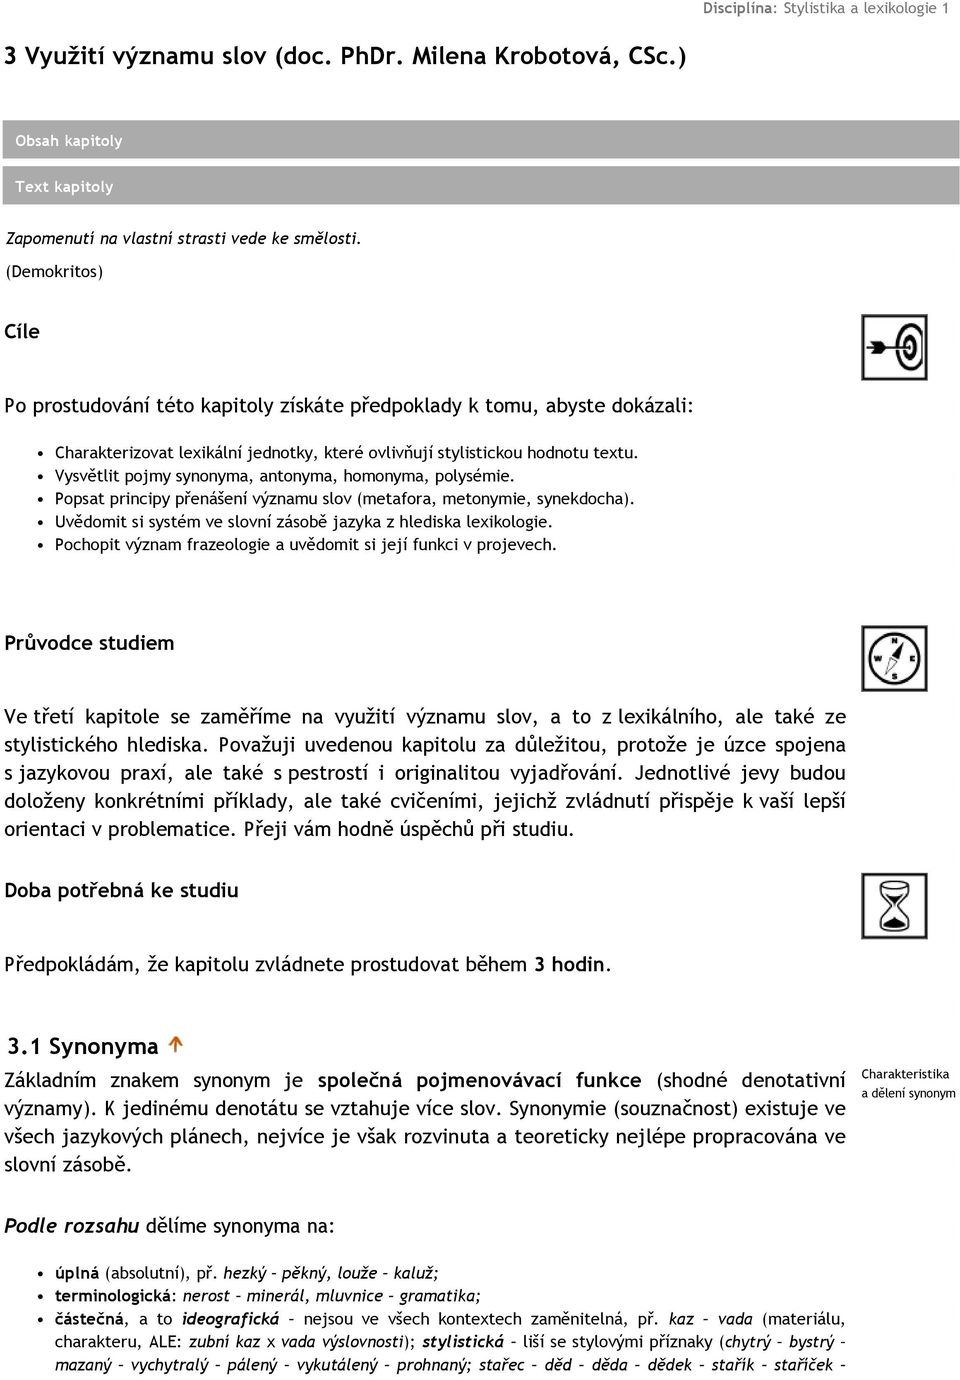 3 Využití významu slov (doc. PhDr. Milena Krobotová, CSc.) - PDF Stažení  zdarma